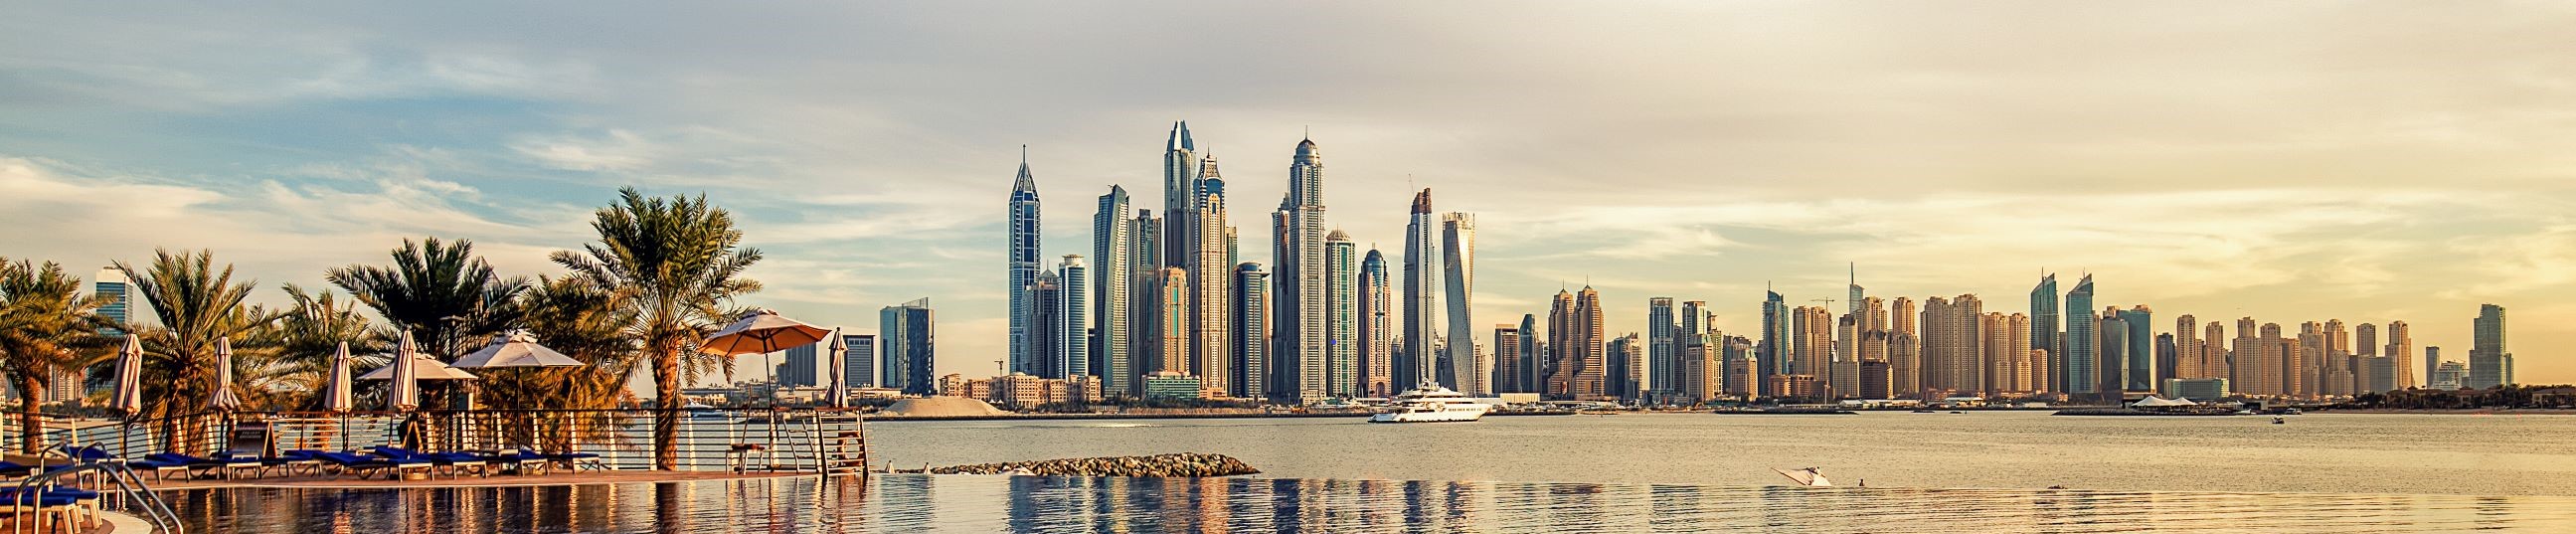 buy inbound travel insurance for Dubai